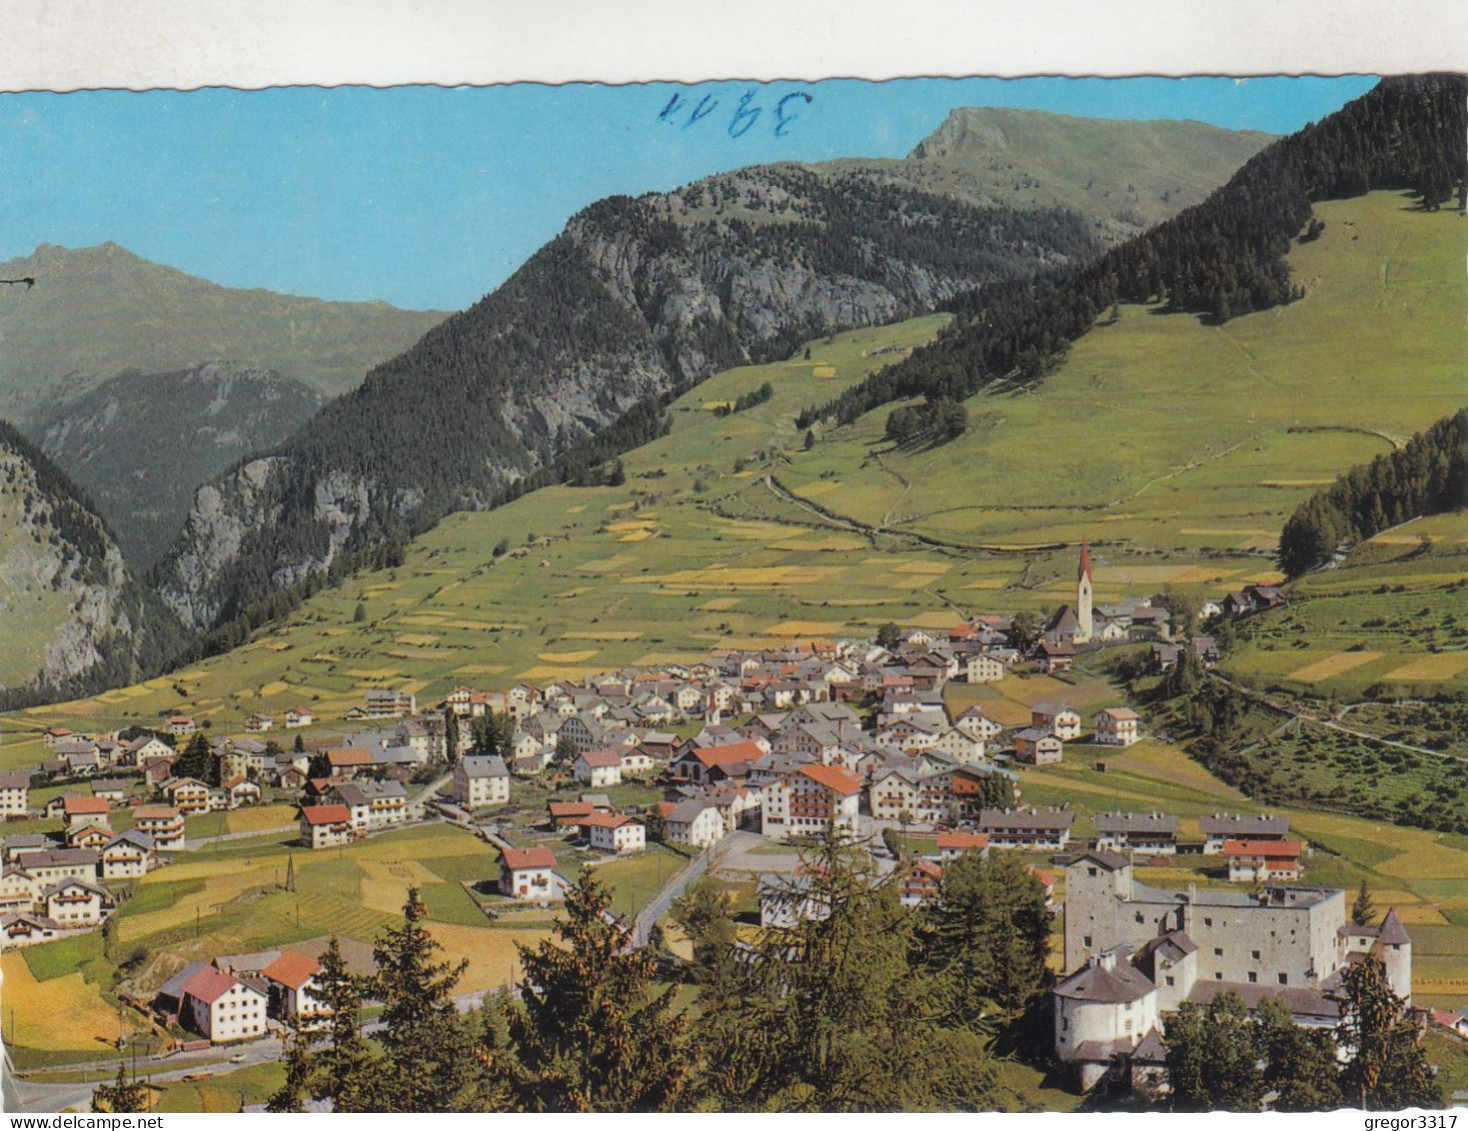 D3990) NAUDERS - Und Schloß Nauders - Tirol - Schöne, ältere Farbvariante - Nauders